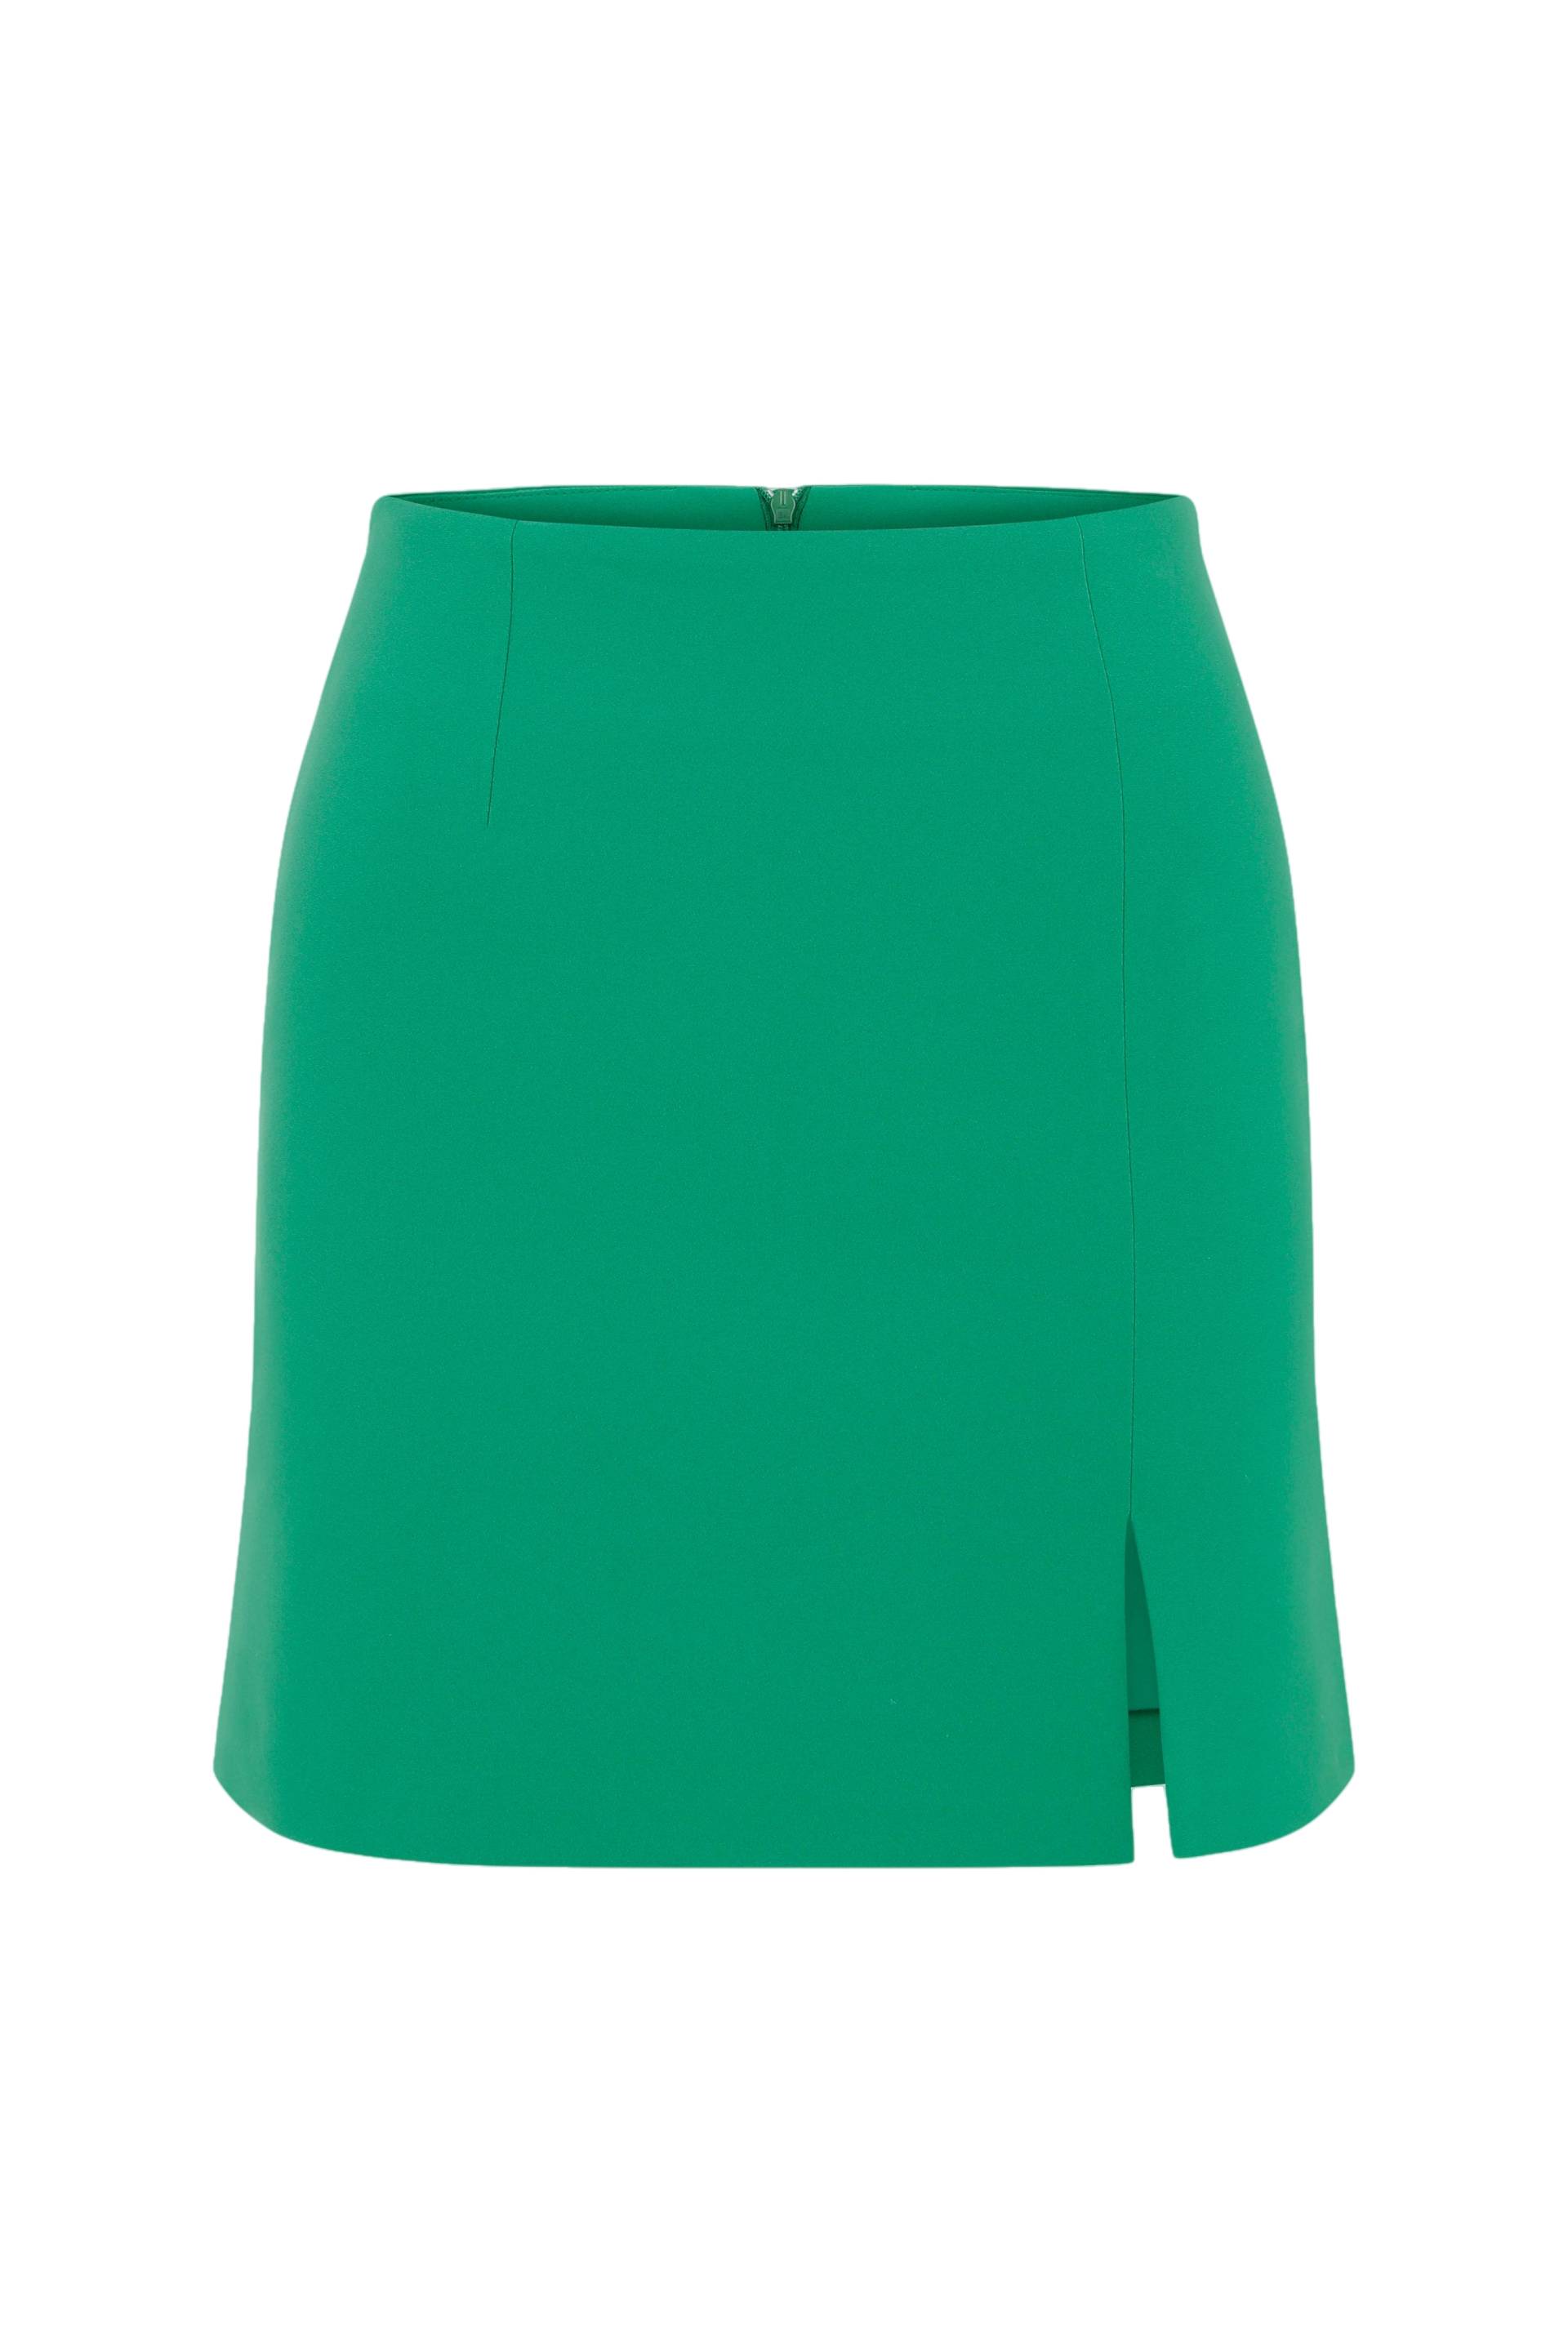 Vance A-Line Mini Skirt in Vert de Noel von Nazli Ceren